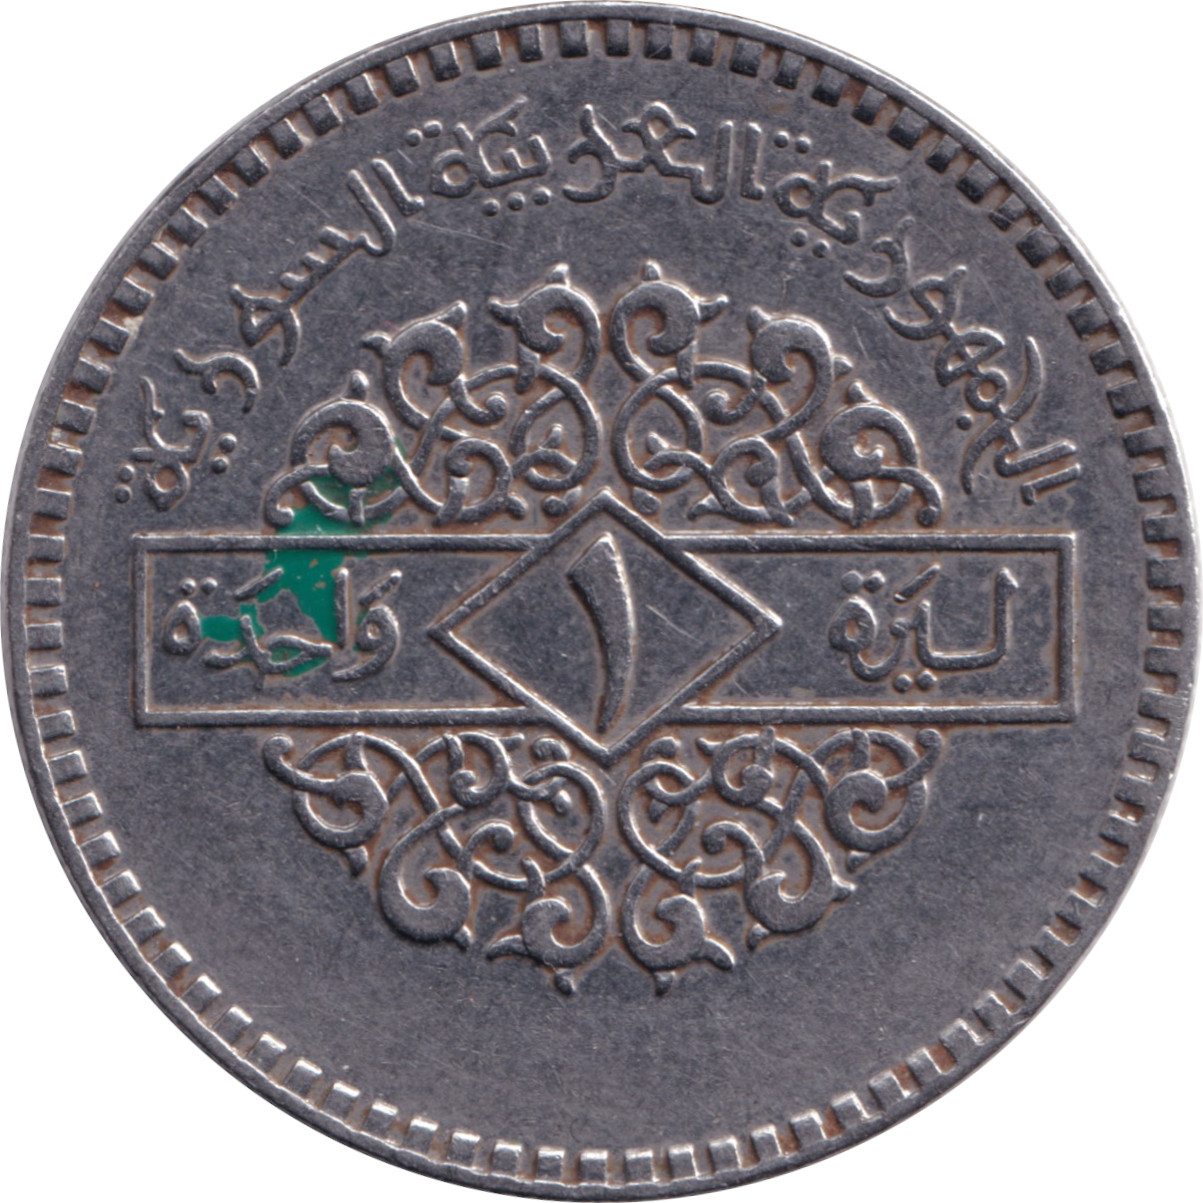 1 pound - République arabe - Petit module - Type 1